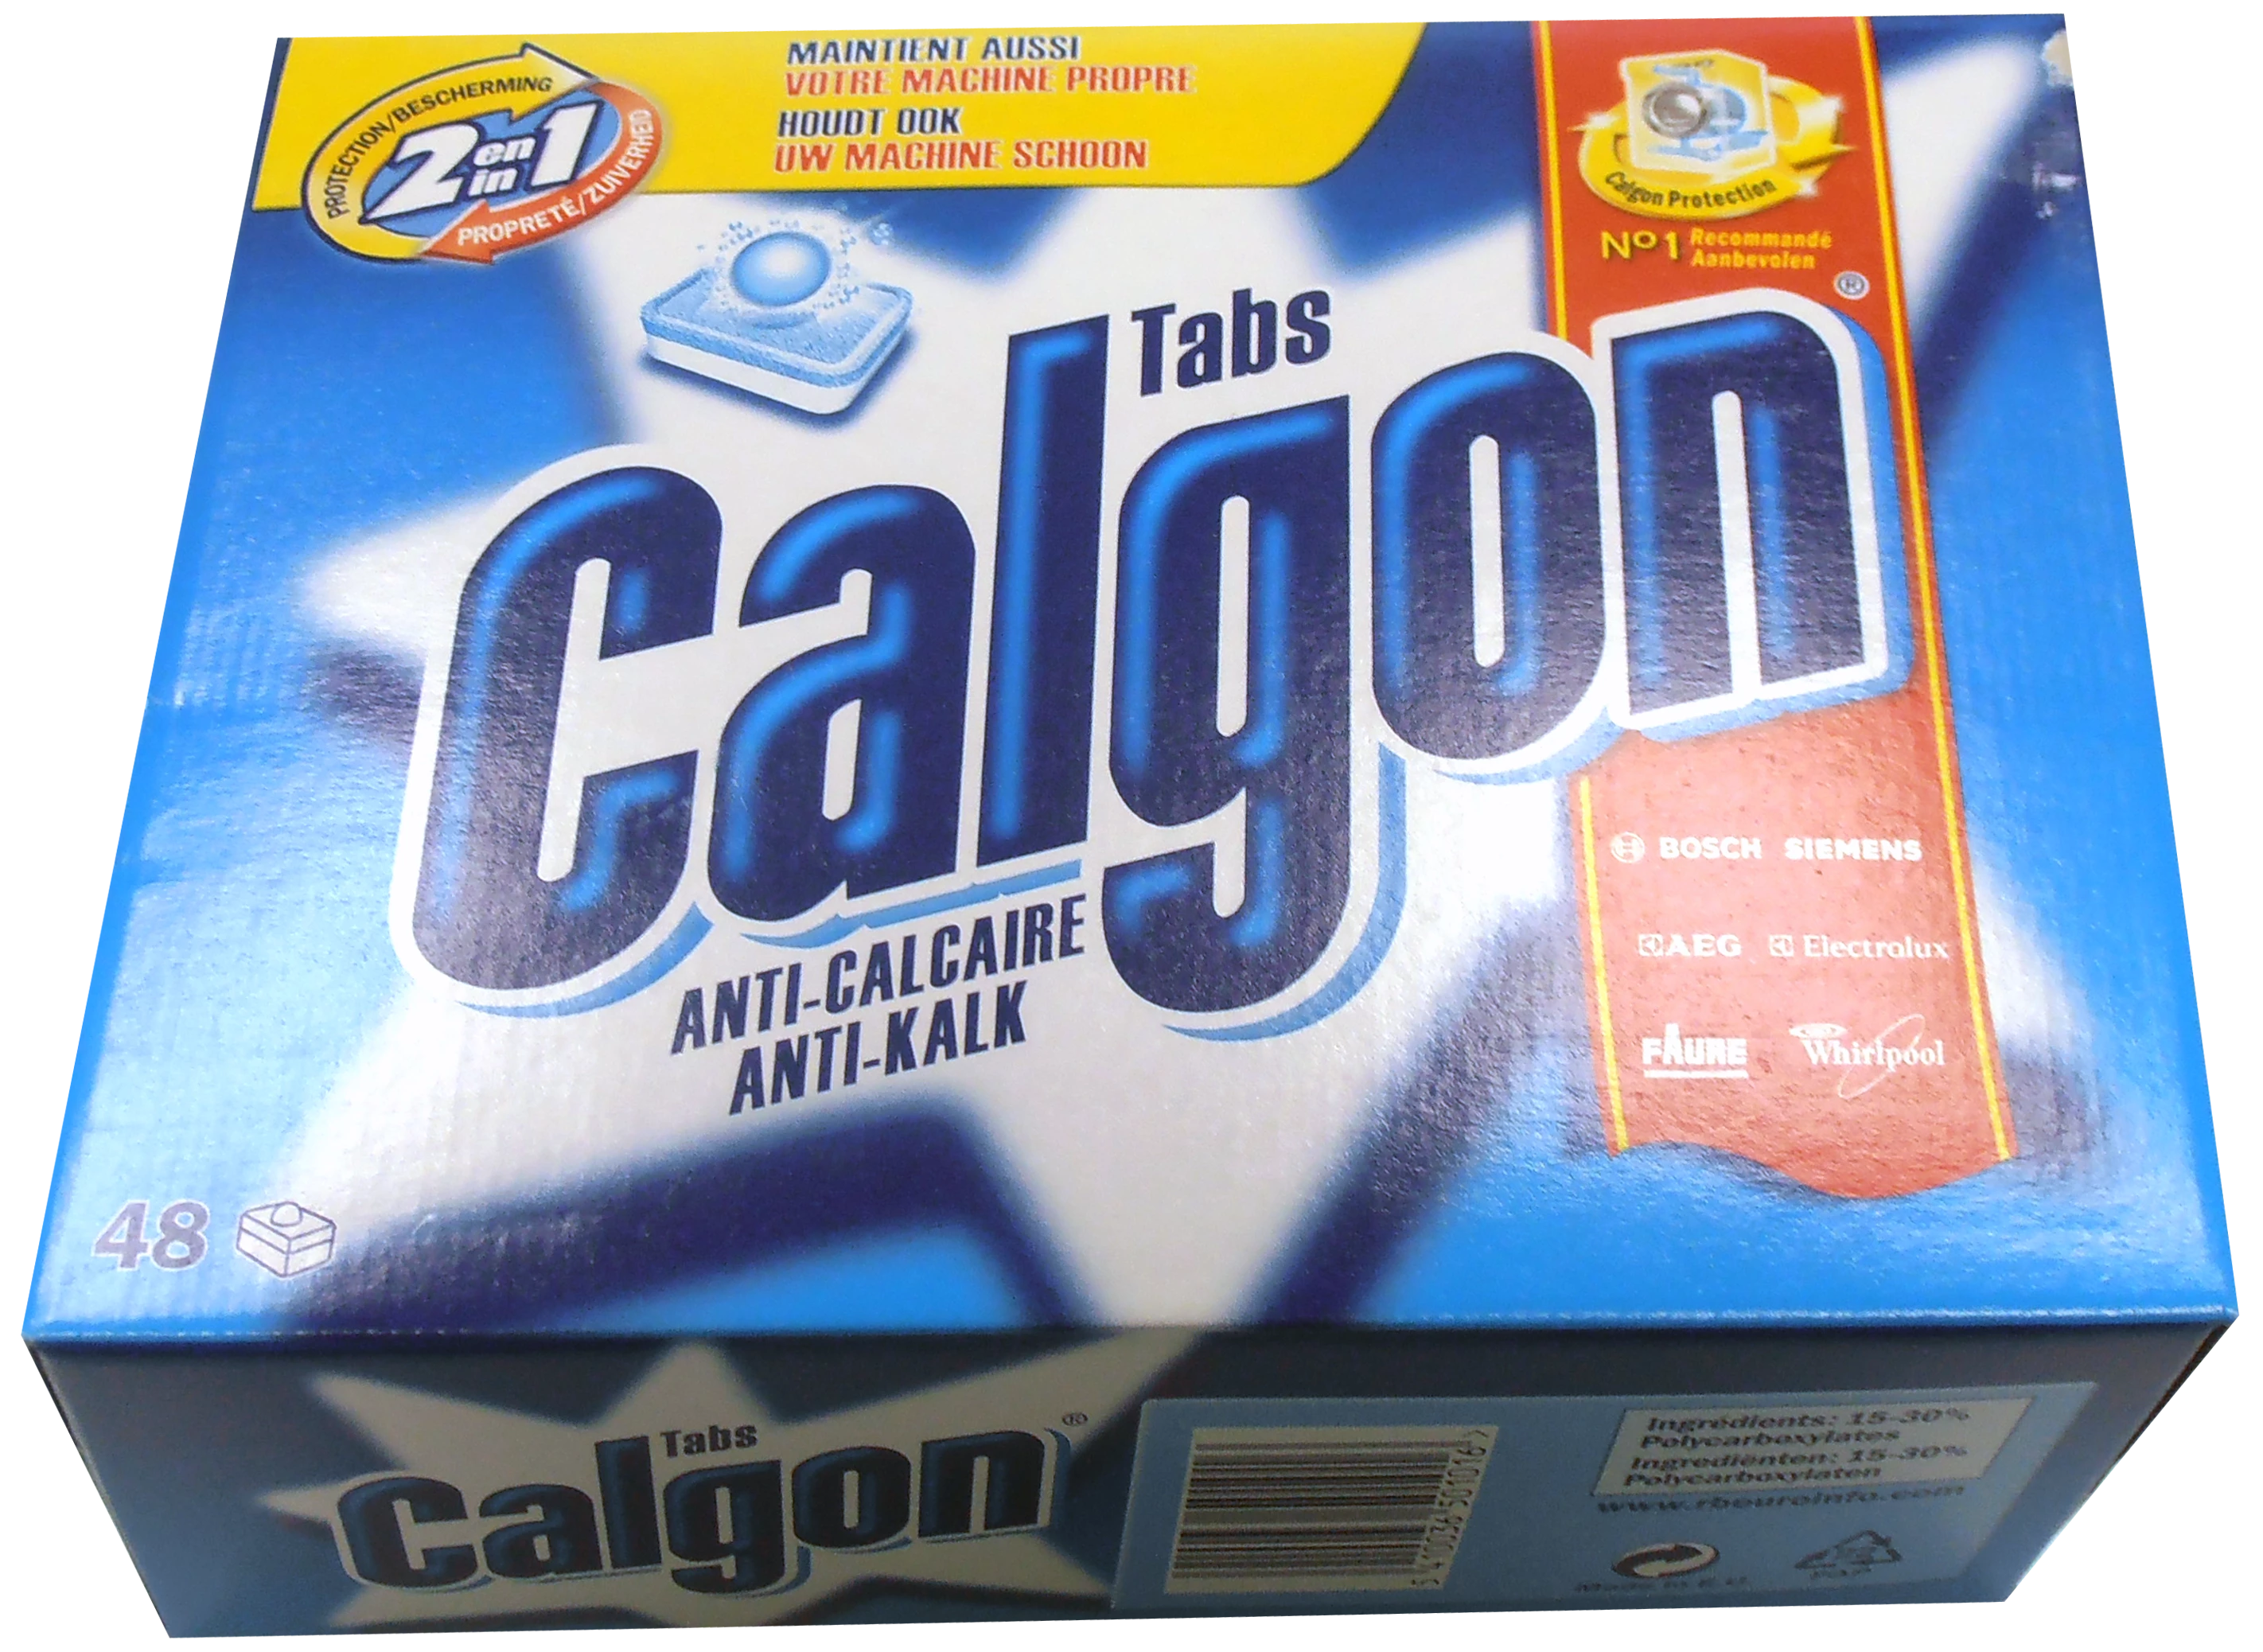 Calgon X48 Tabs 2em1 720g